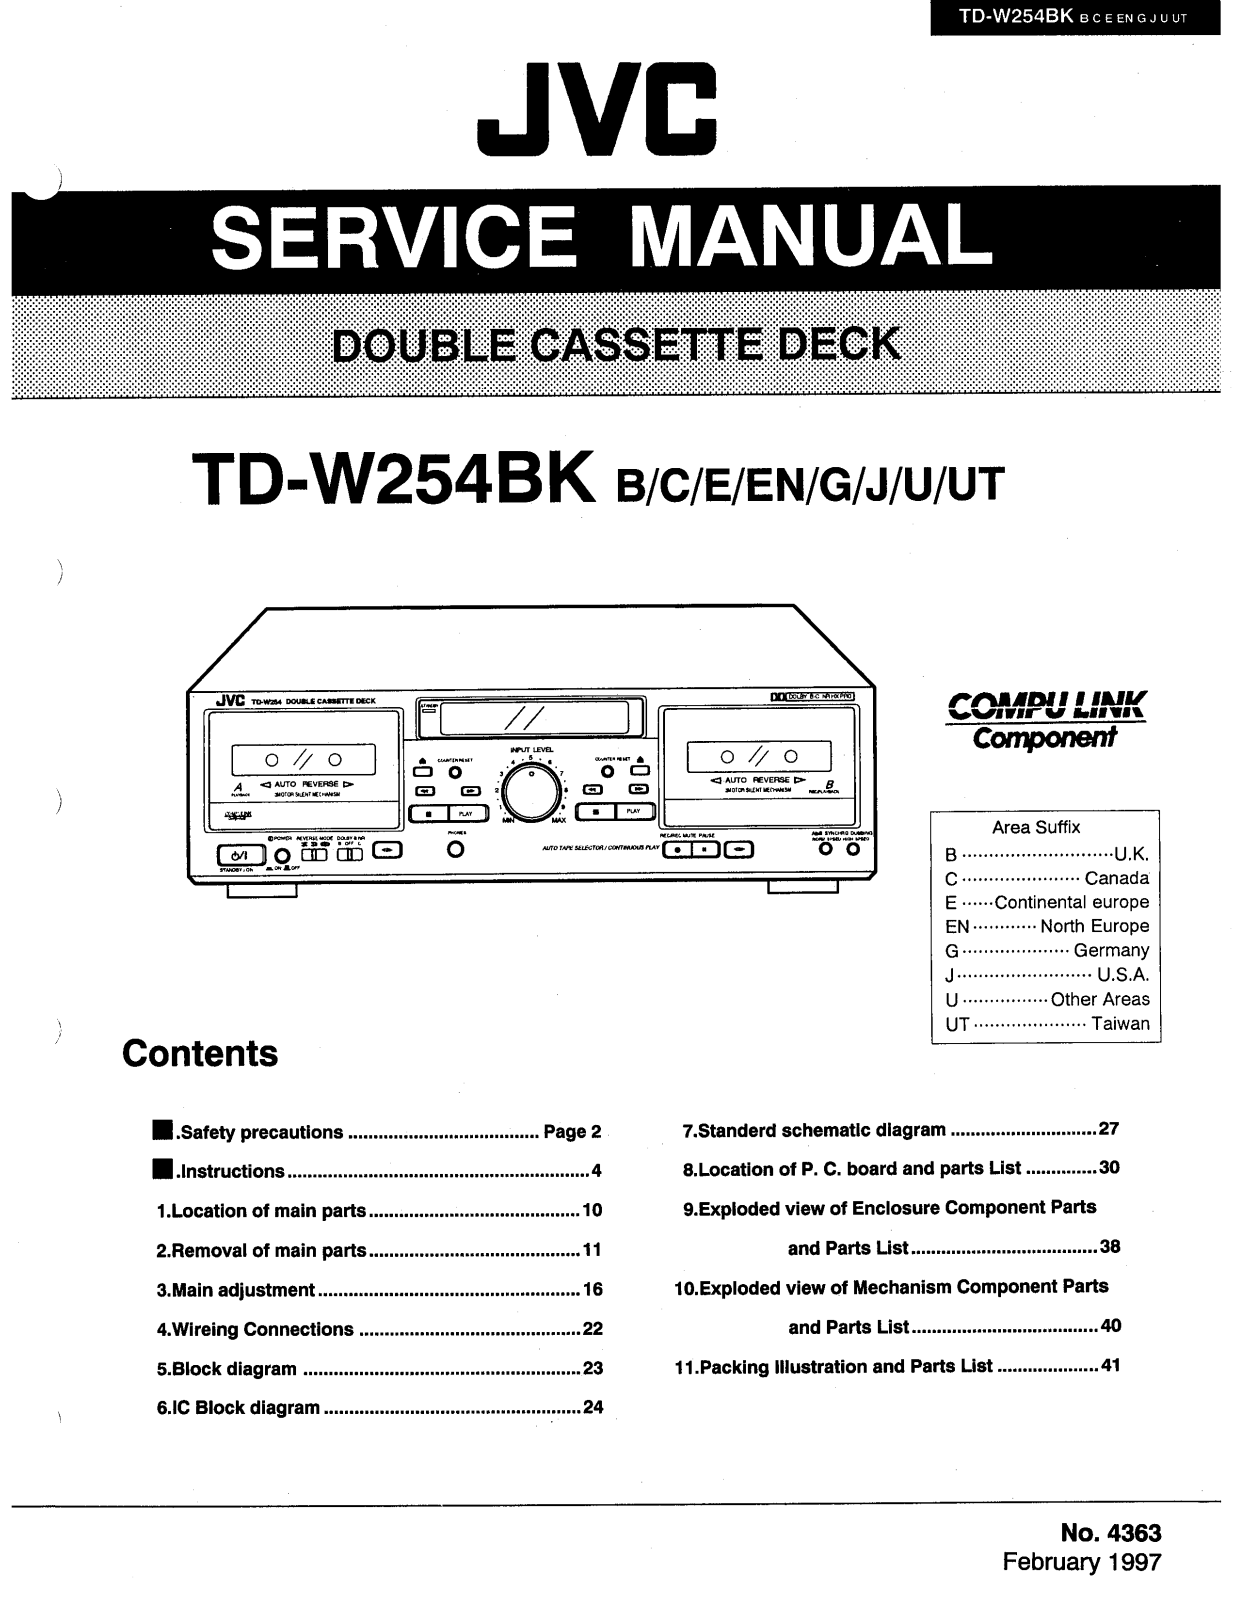 JVC TD-W254BK Service Manual